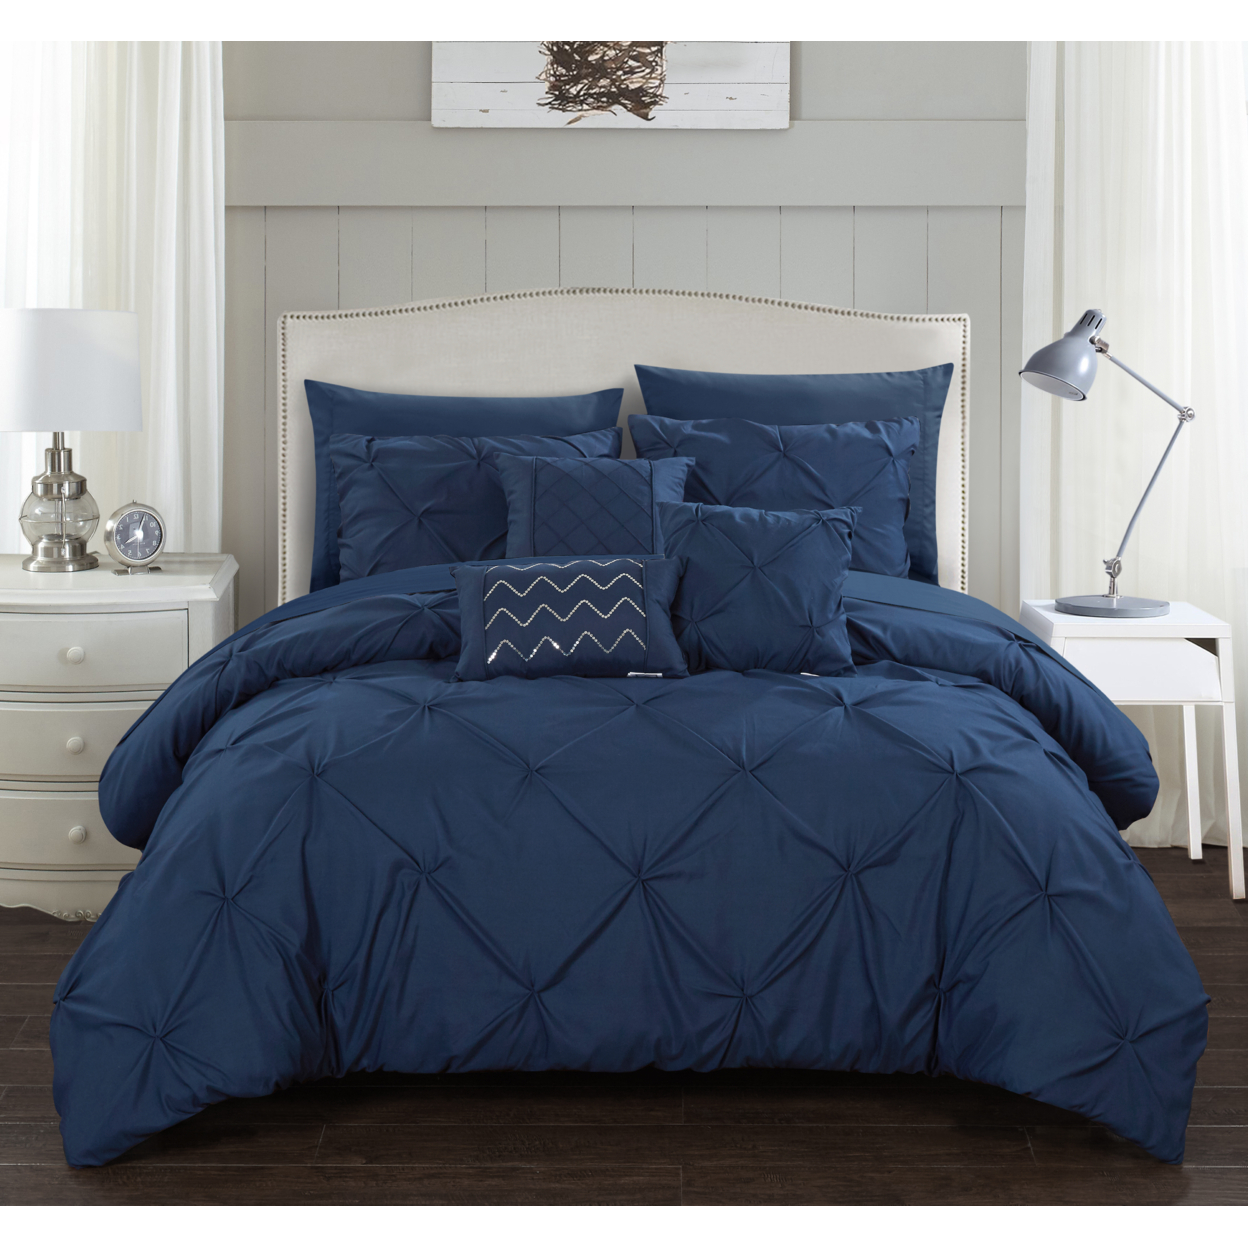 Alvatore Pinch Pleated Bed In A Bag Comforter Set - Navy, Queen